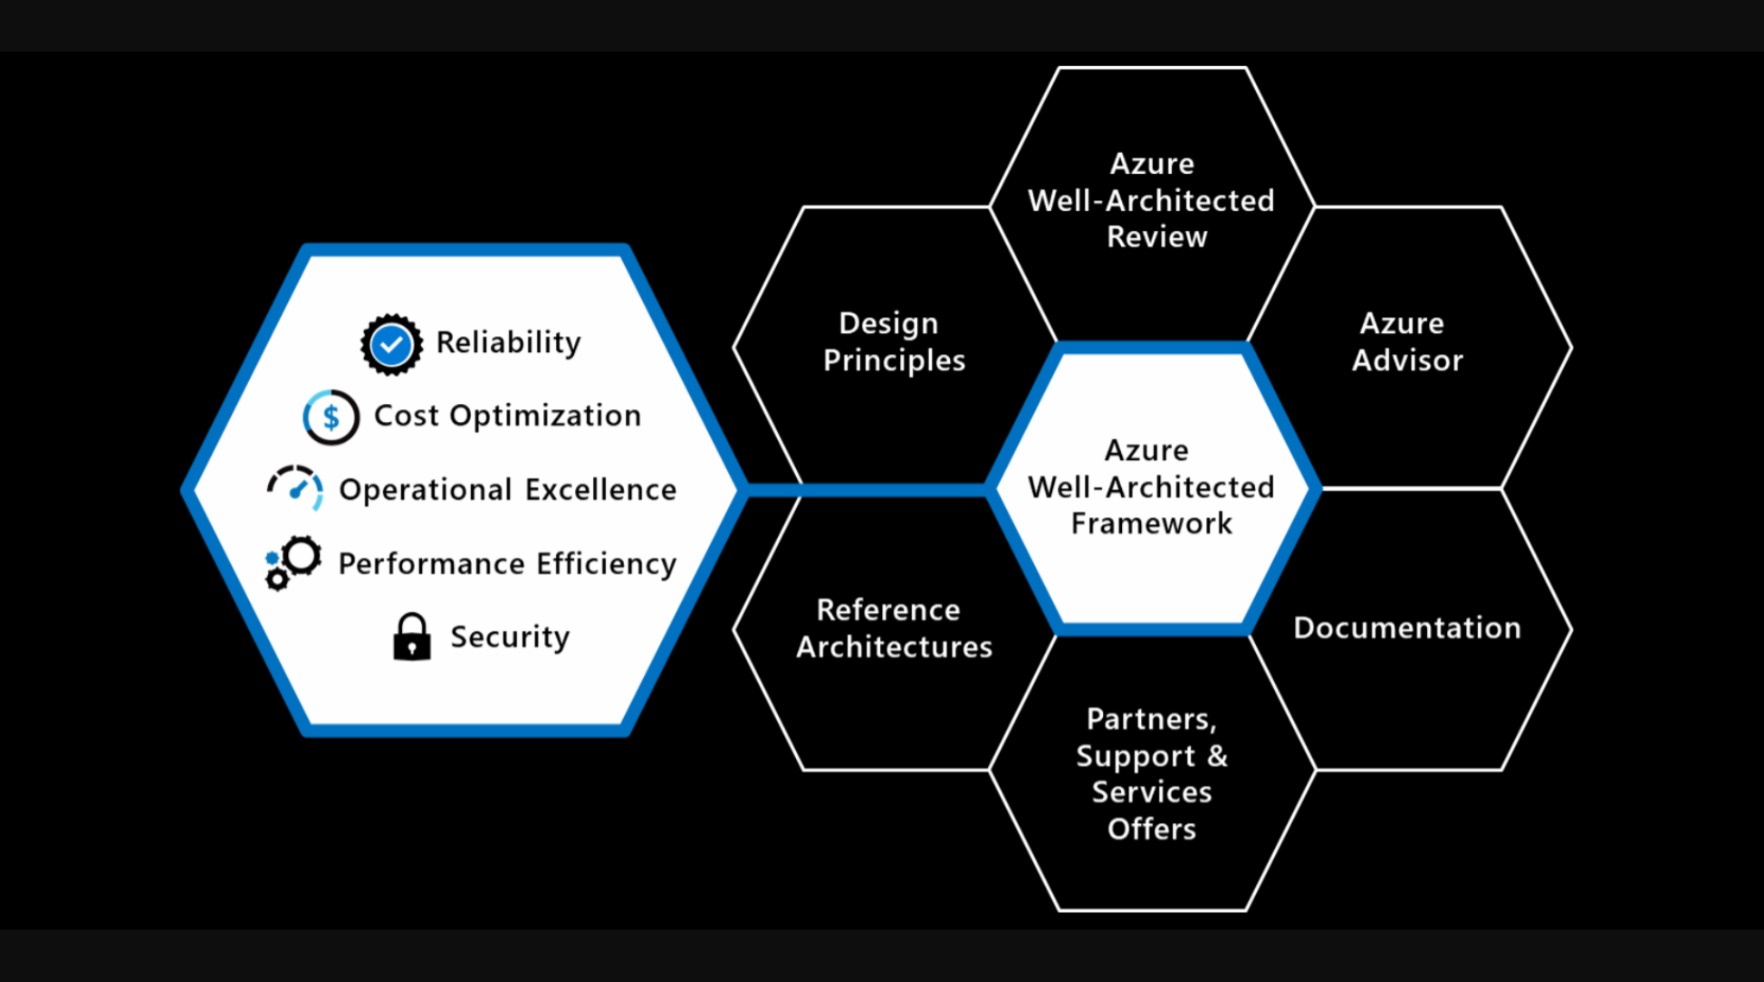 Diagrama do Well-Architected Framework e elementos de suporte.